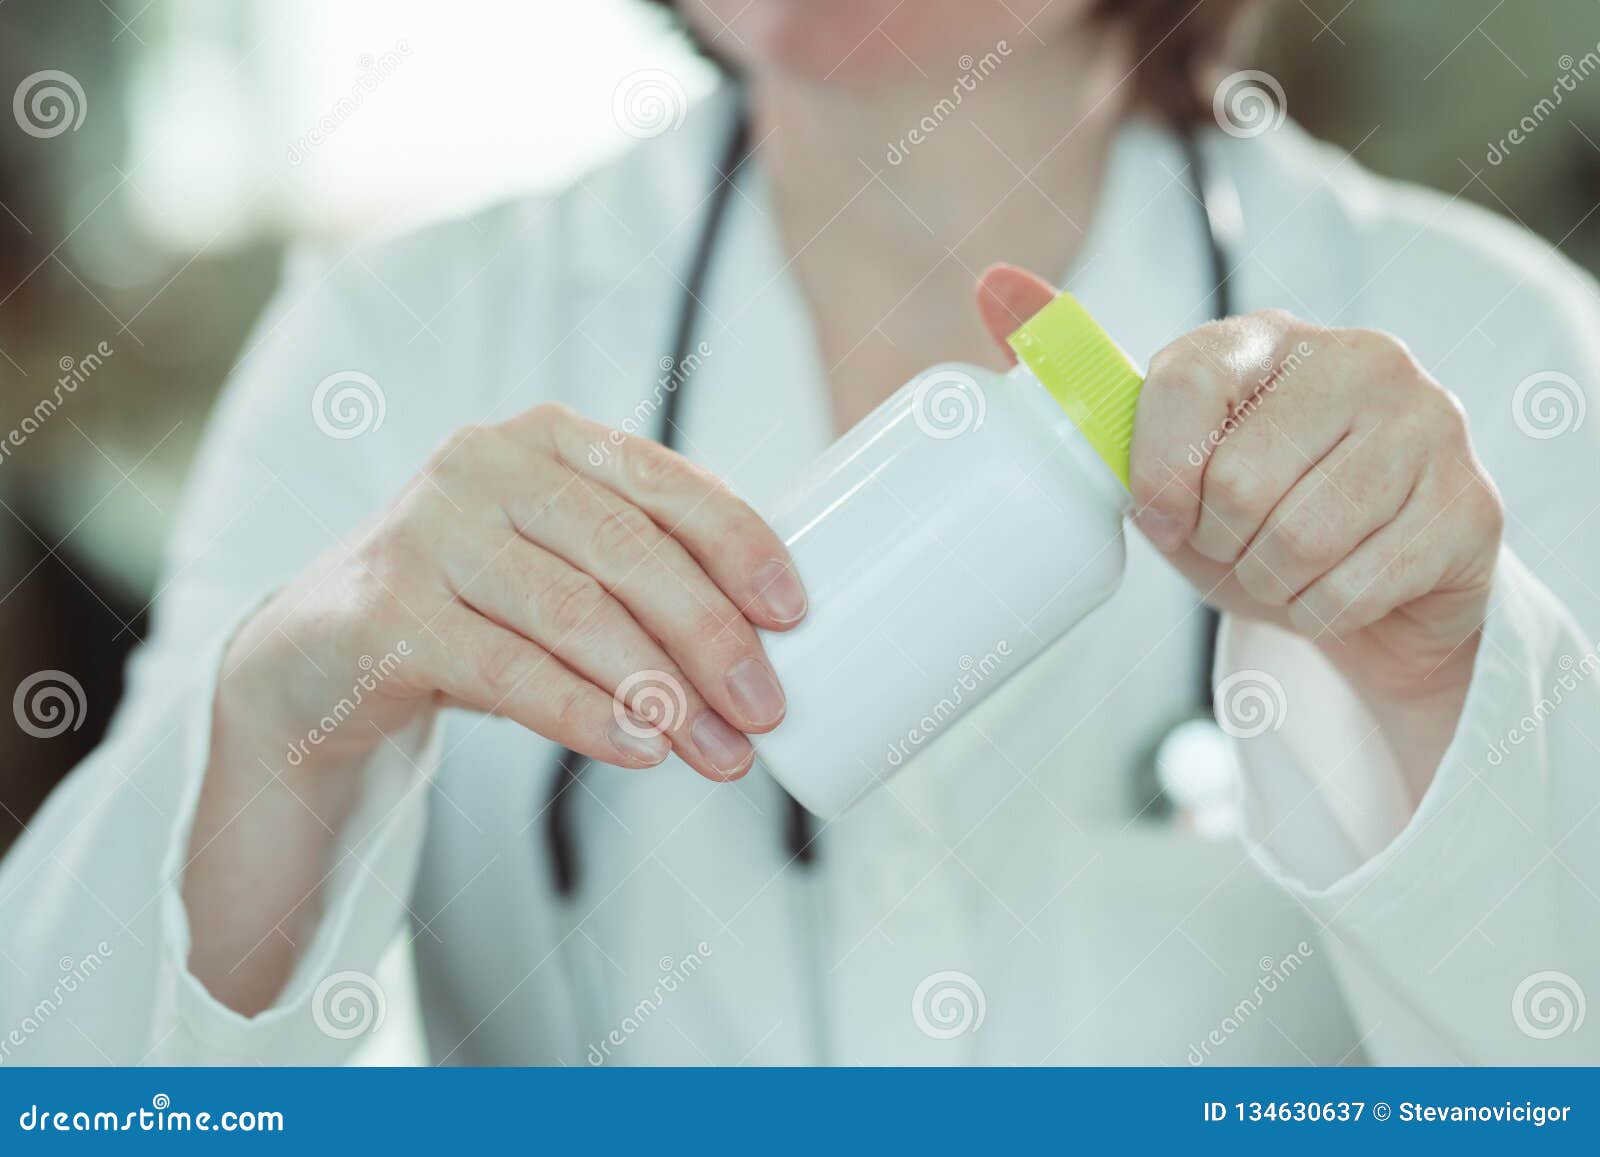 female doctor holding bottle of dietary supplement